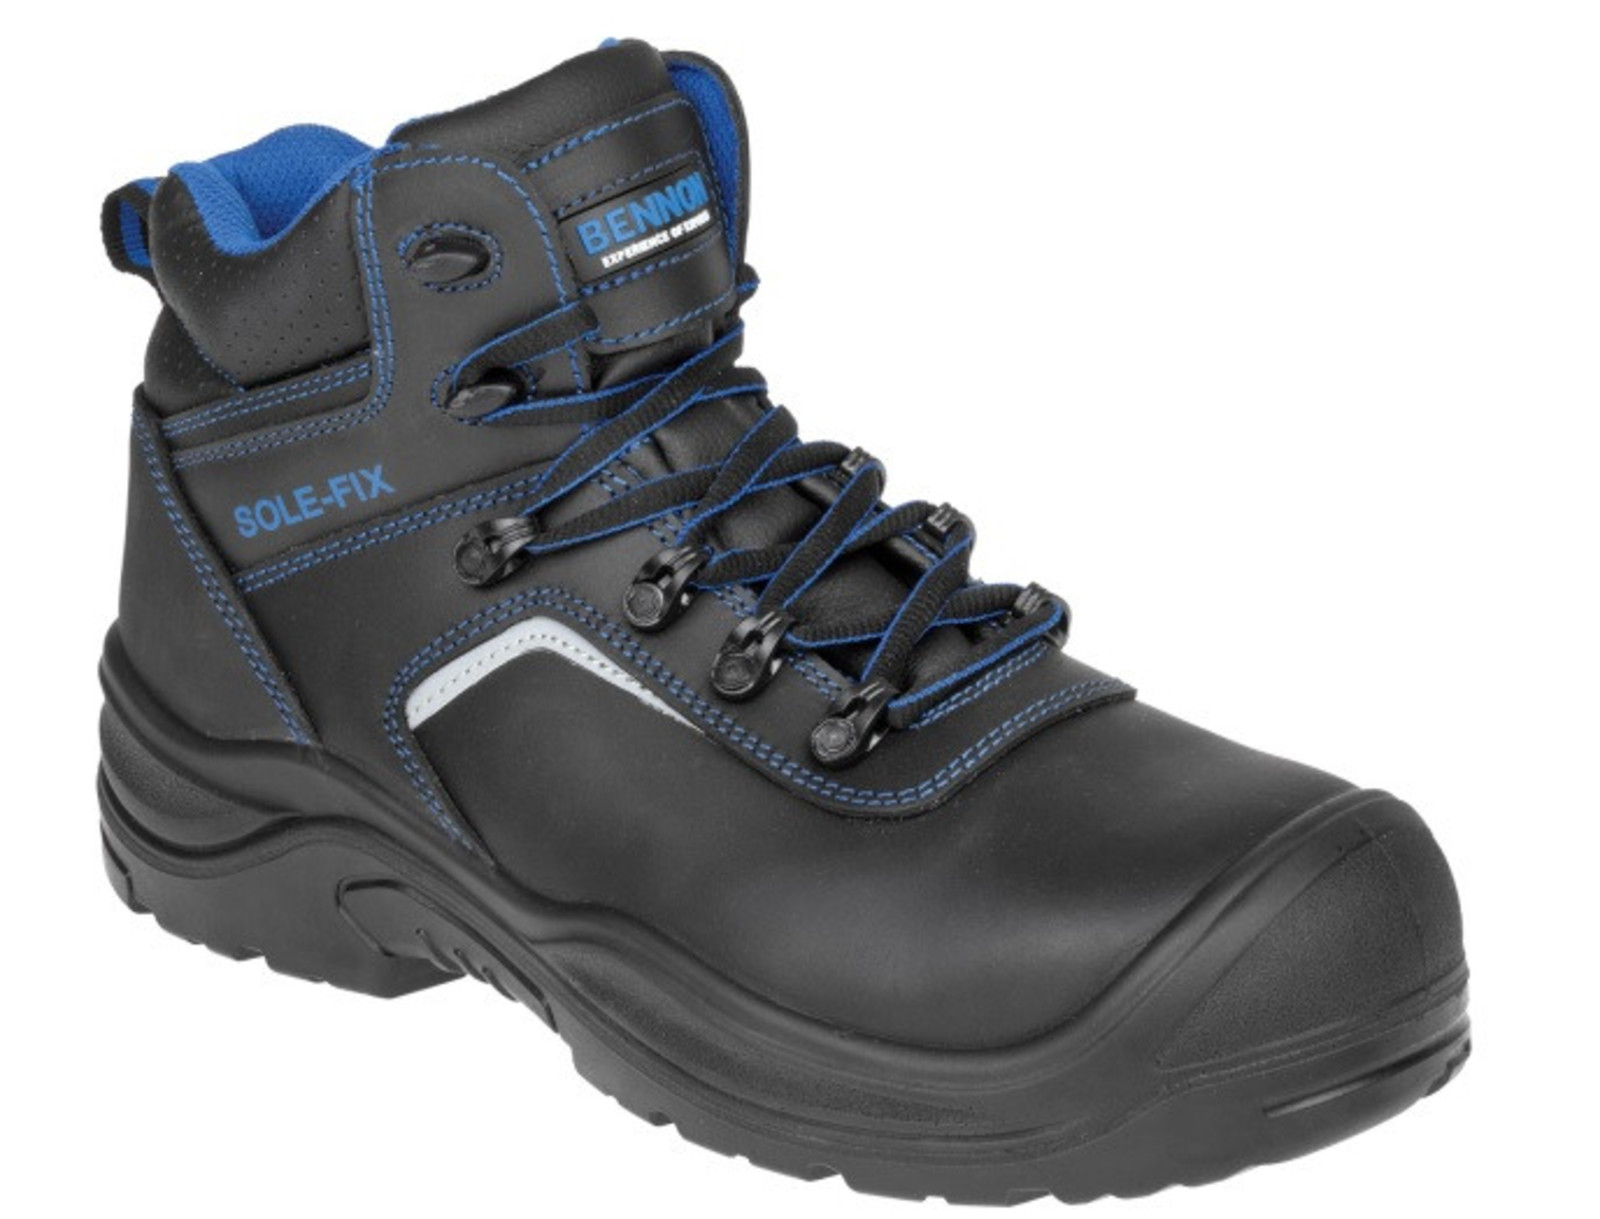 Bezpečnostná obuv Bennon Raptor S3 - veľkosť: 46, farba: čierna/modrá